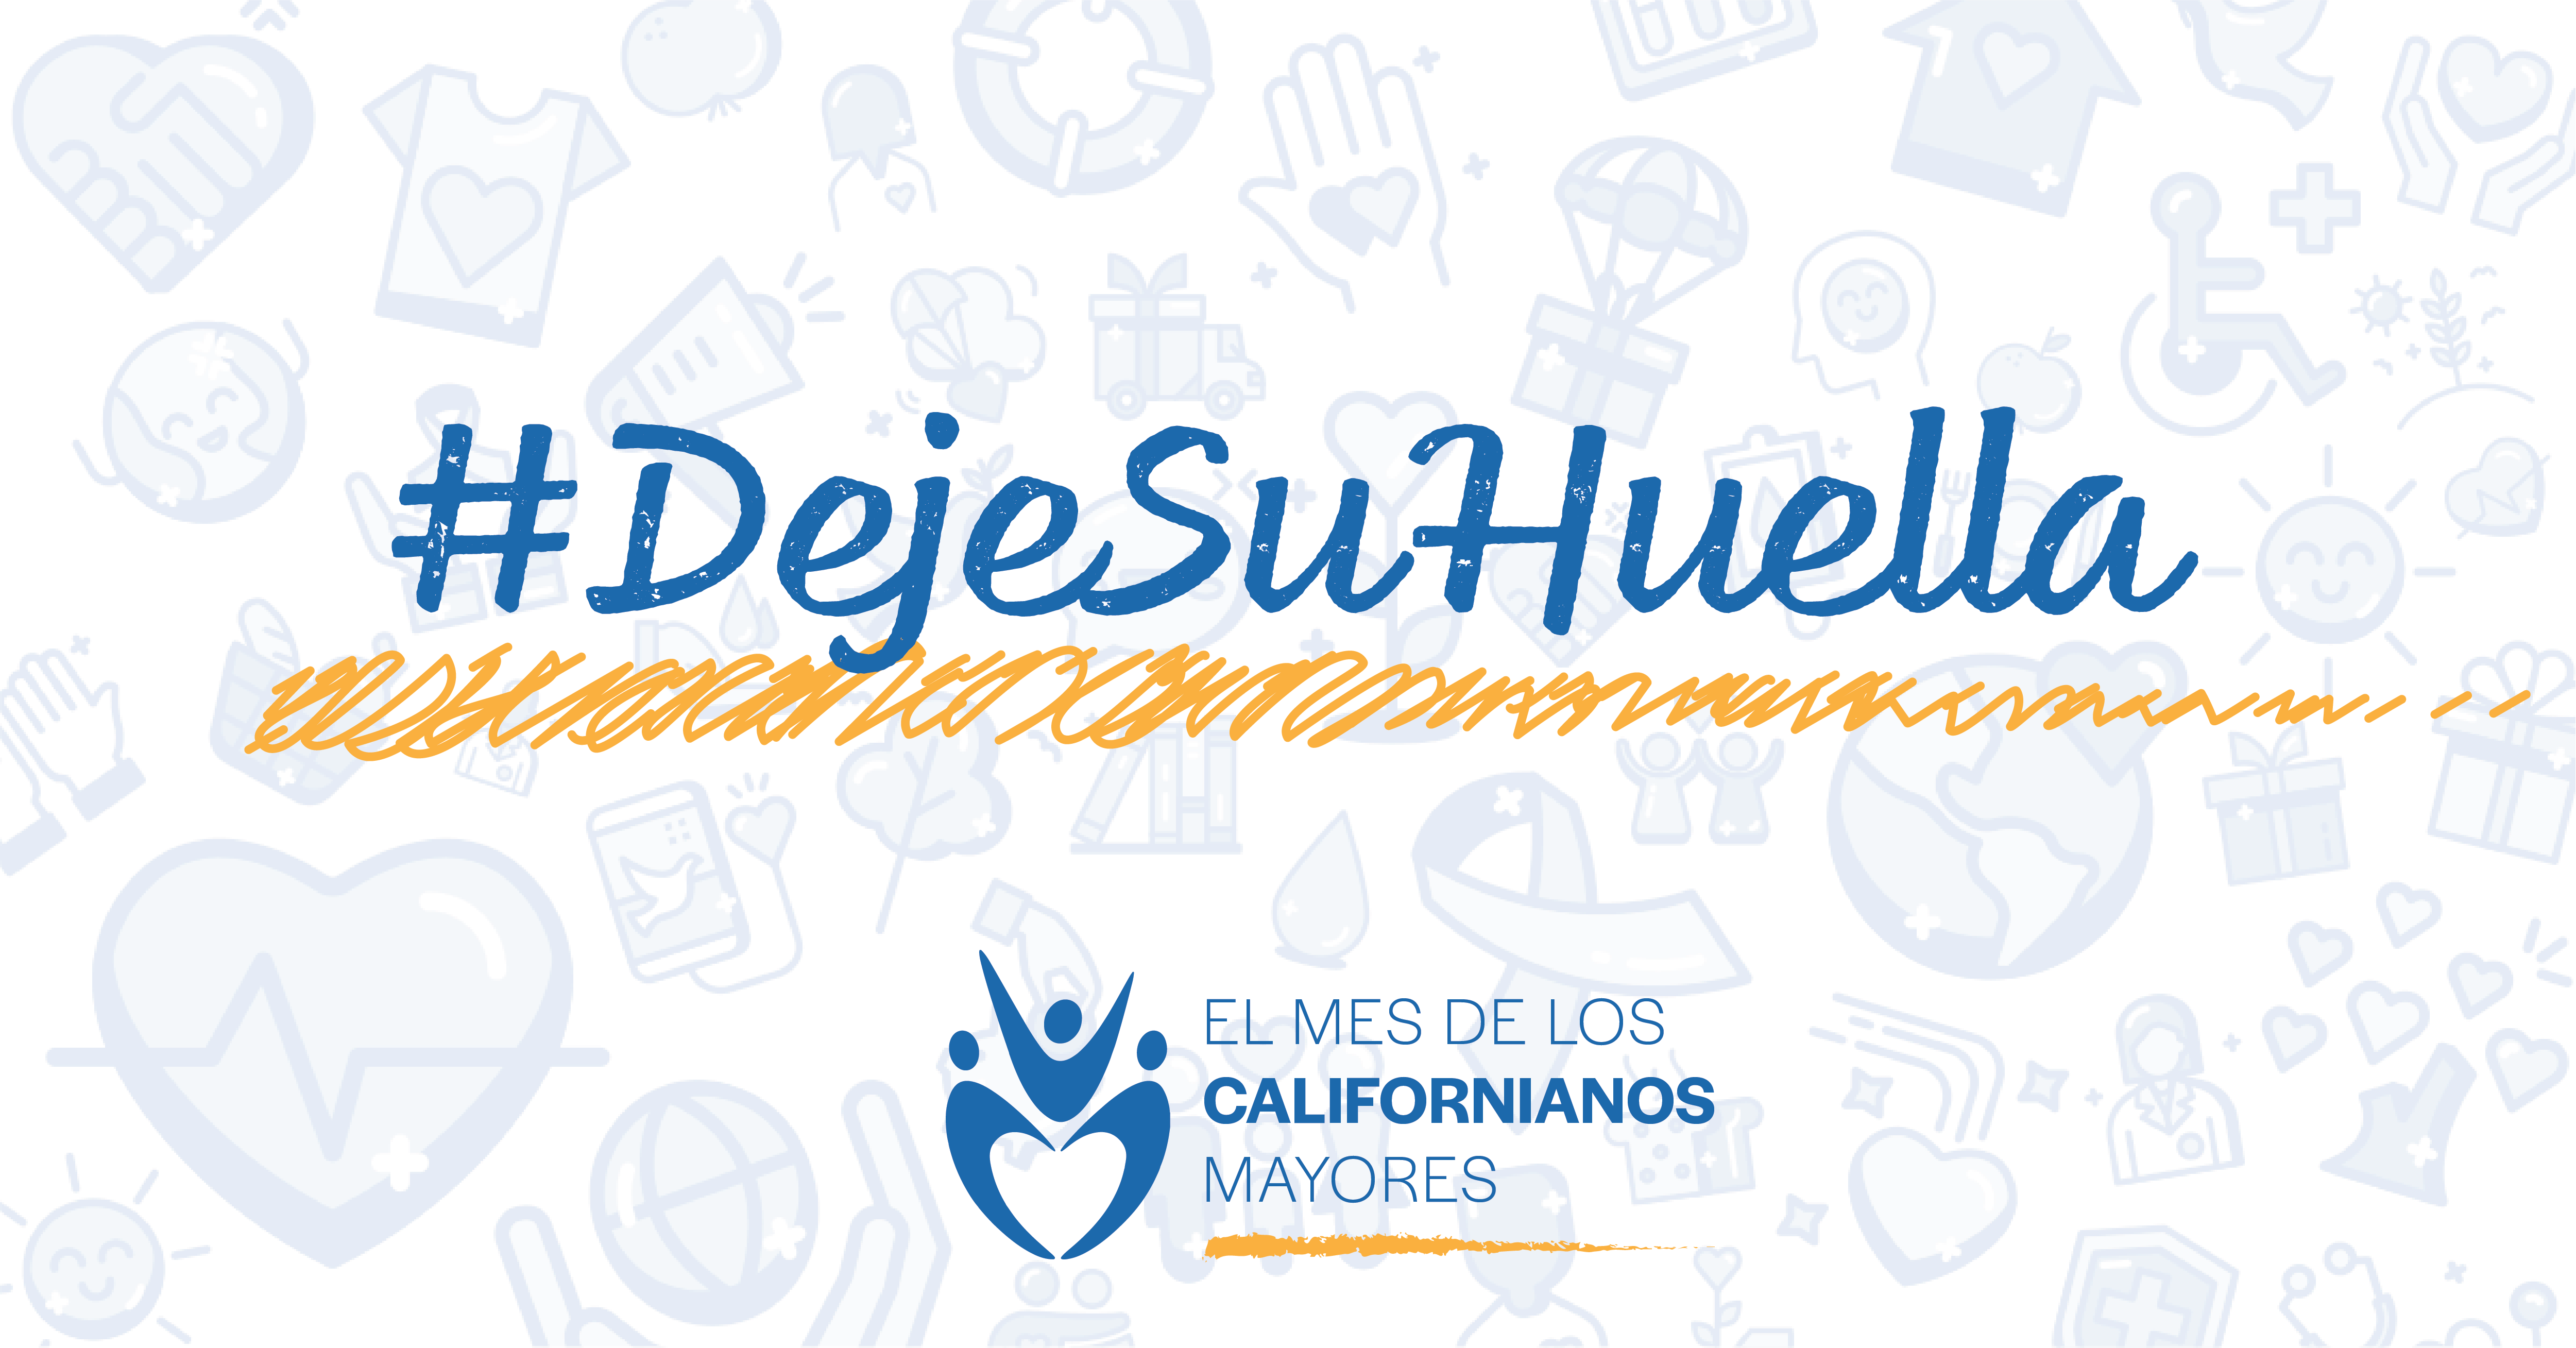 Logotipo del mes de californianos mayores. Texto: #DejeSuHuella